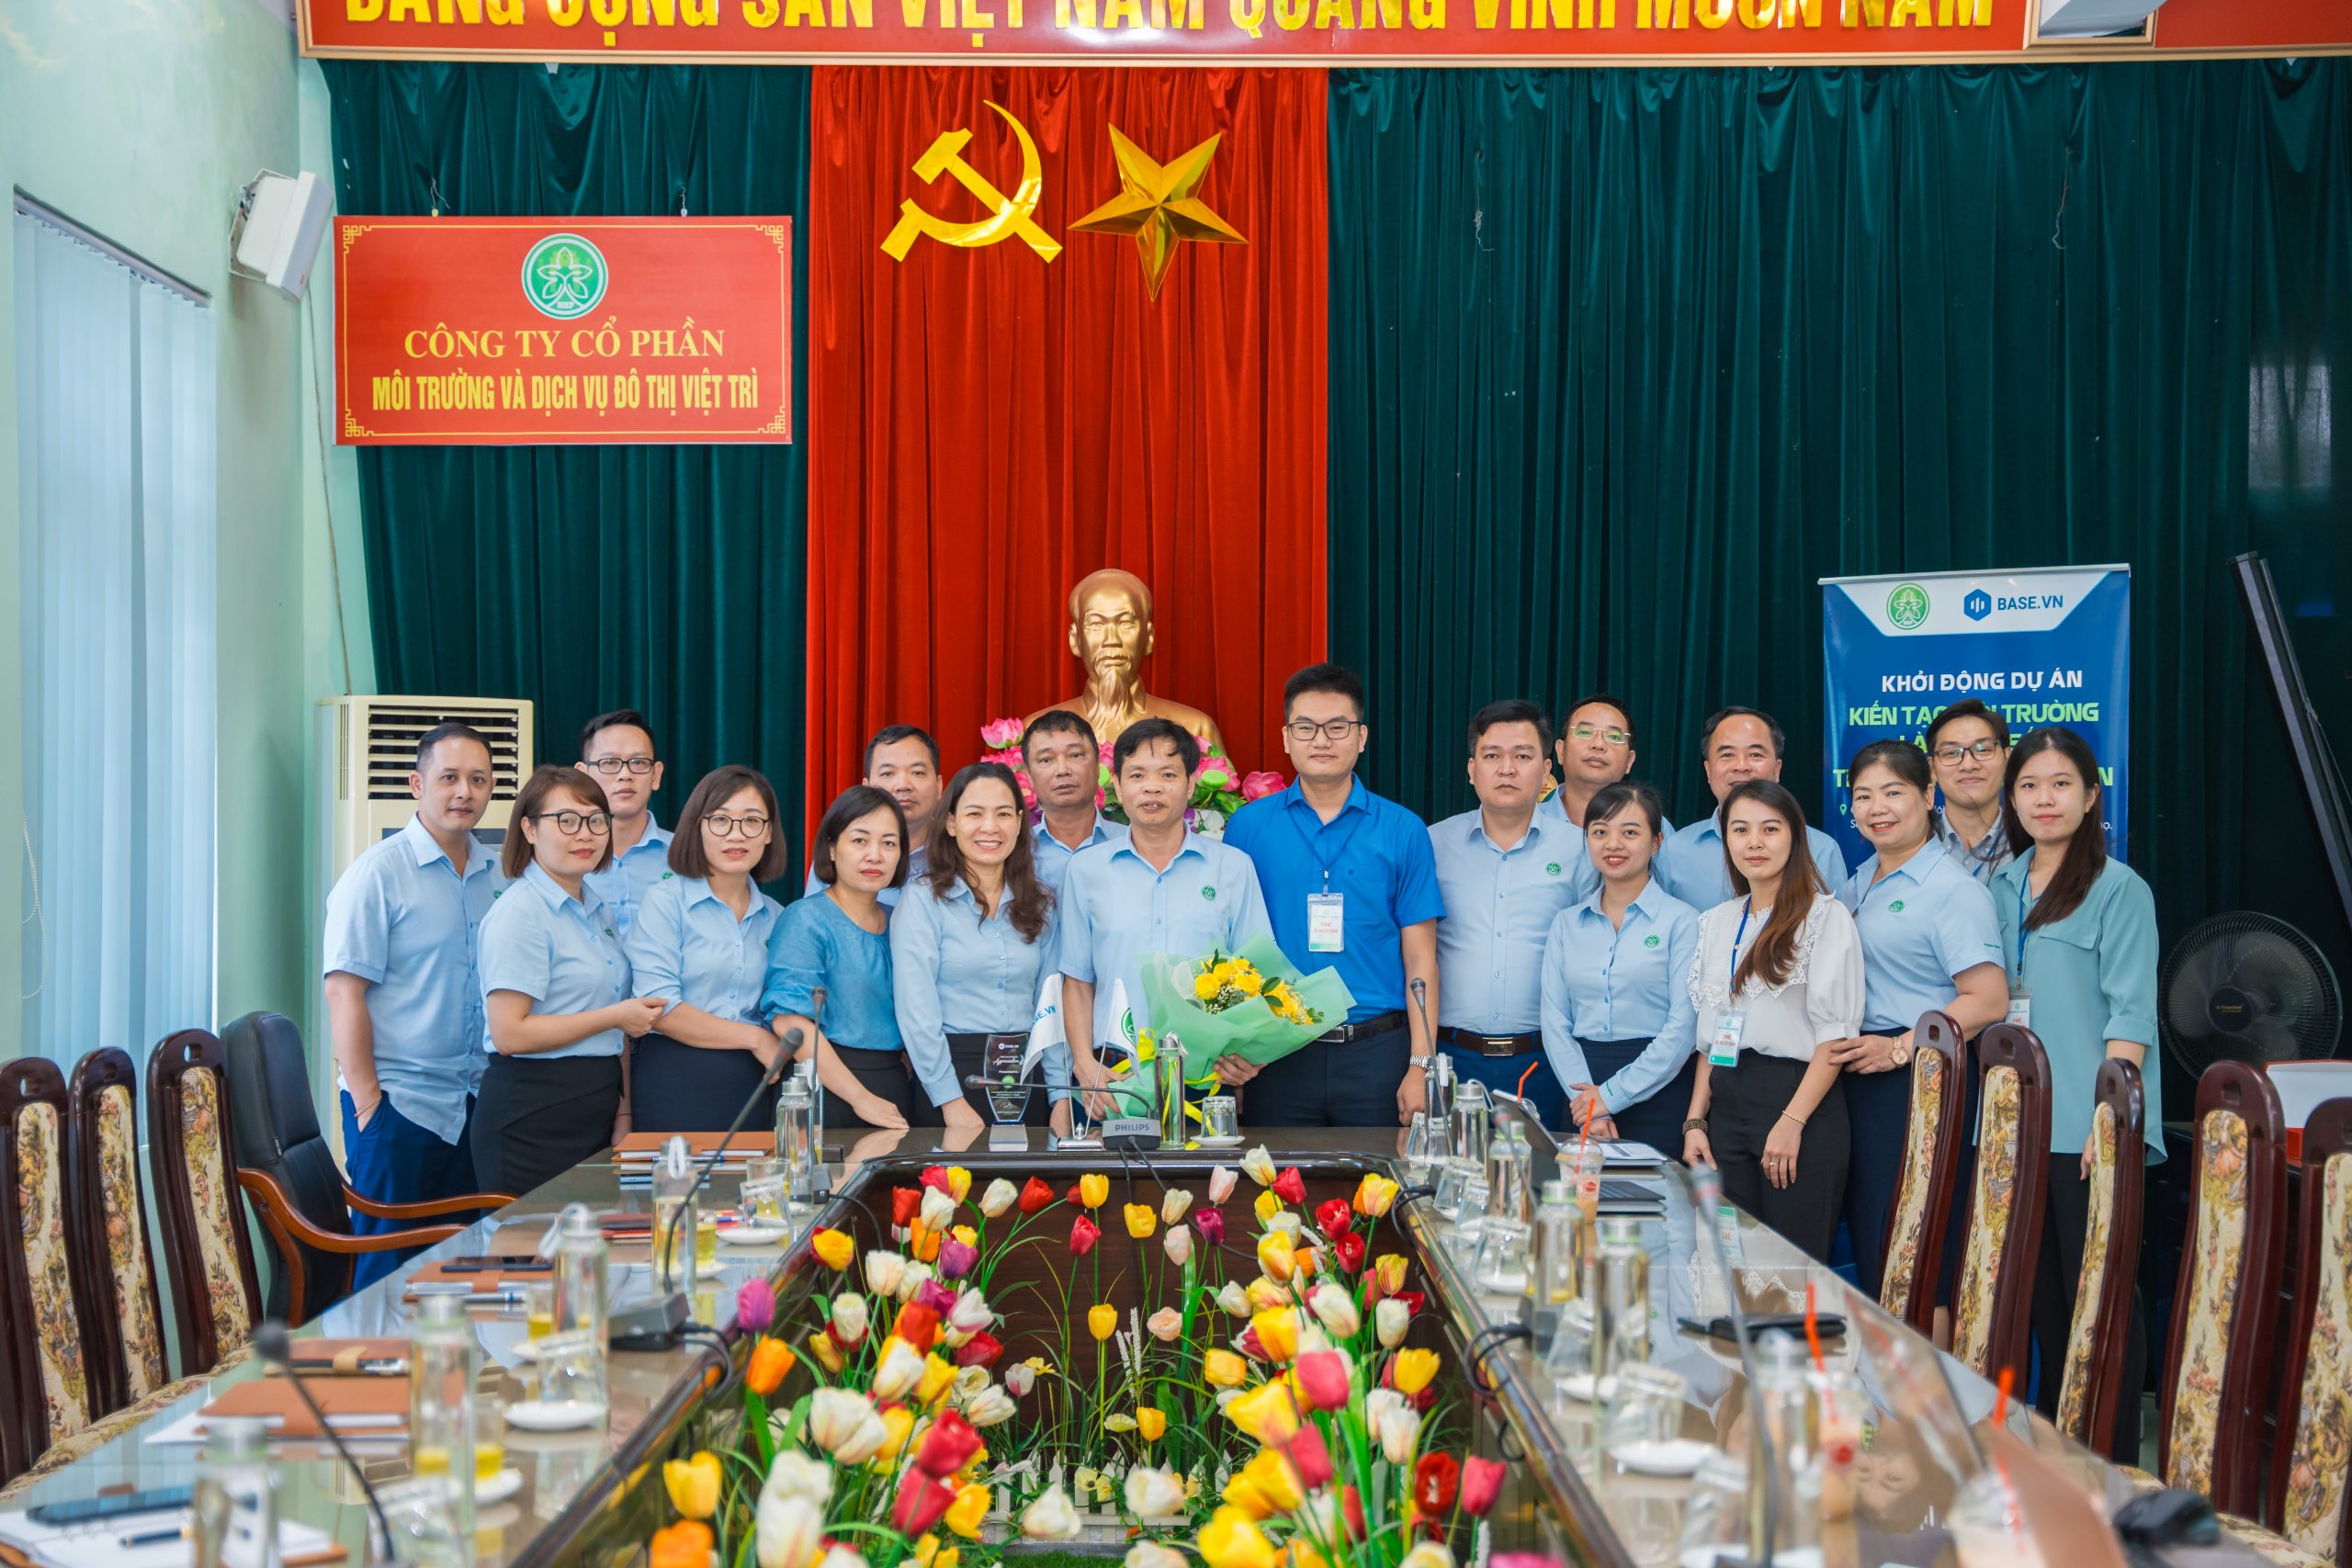 MHP Việt Trì chuyển đổi số cùng base.vn